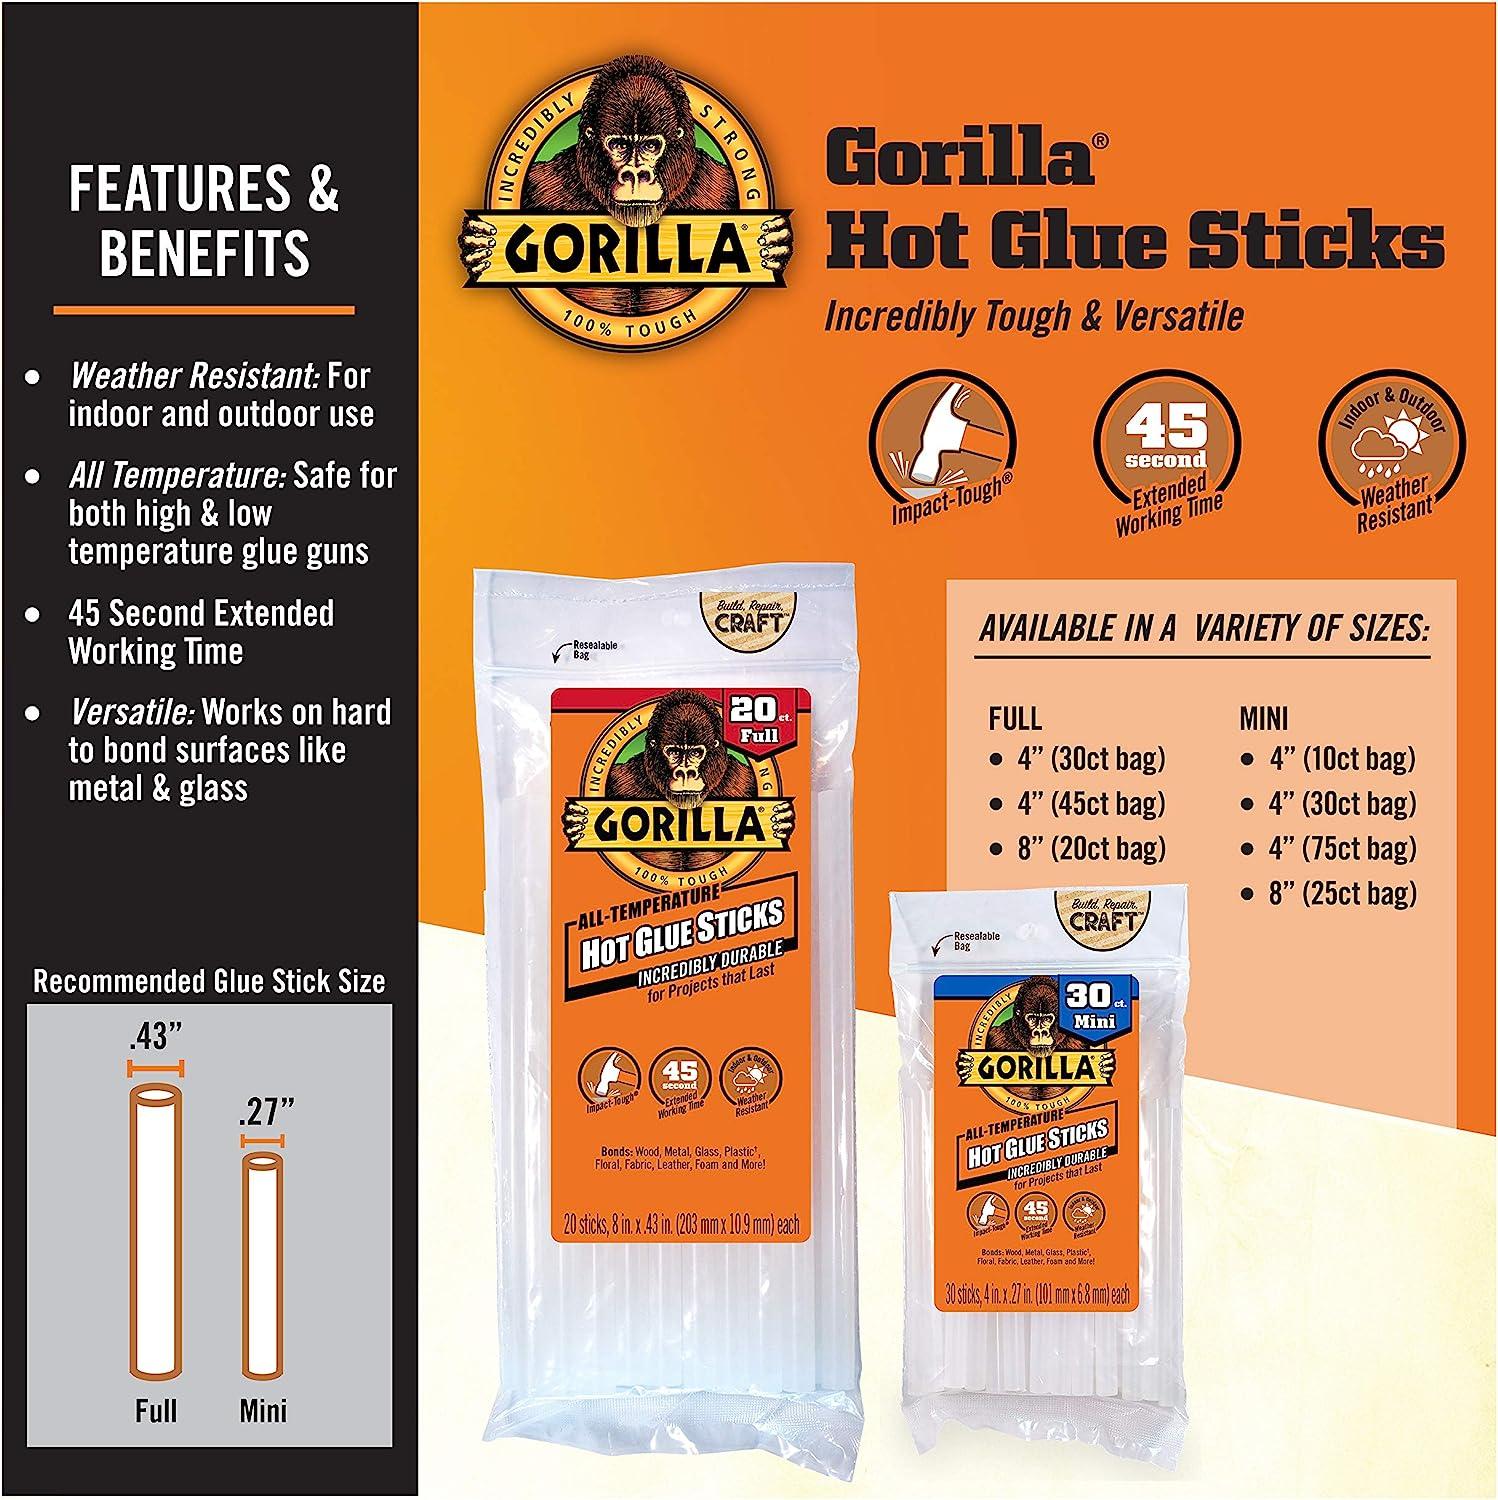 Gorilla Kids Glue Sticks Gorilla Strong